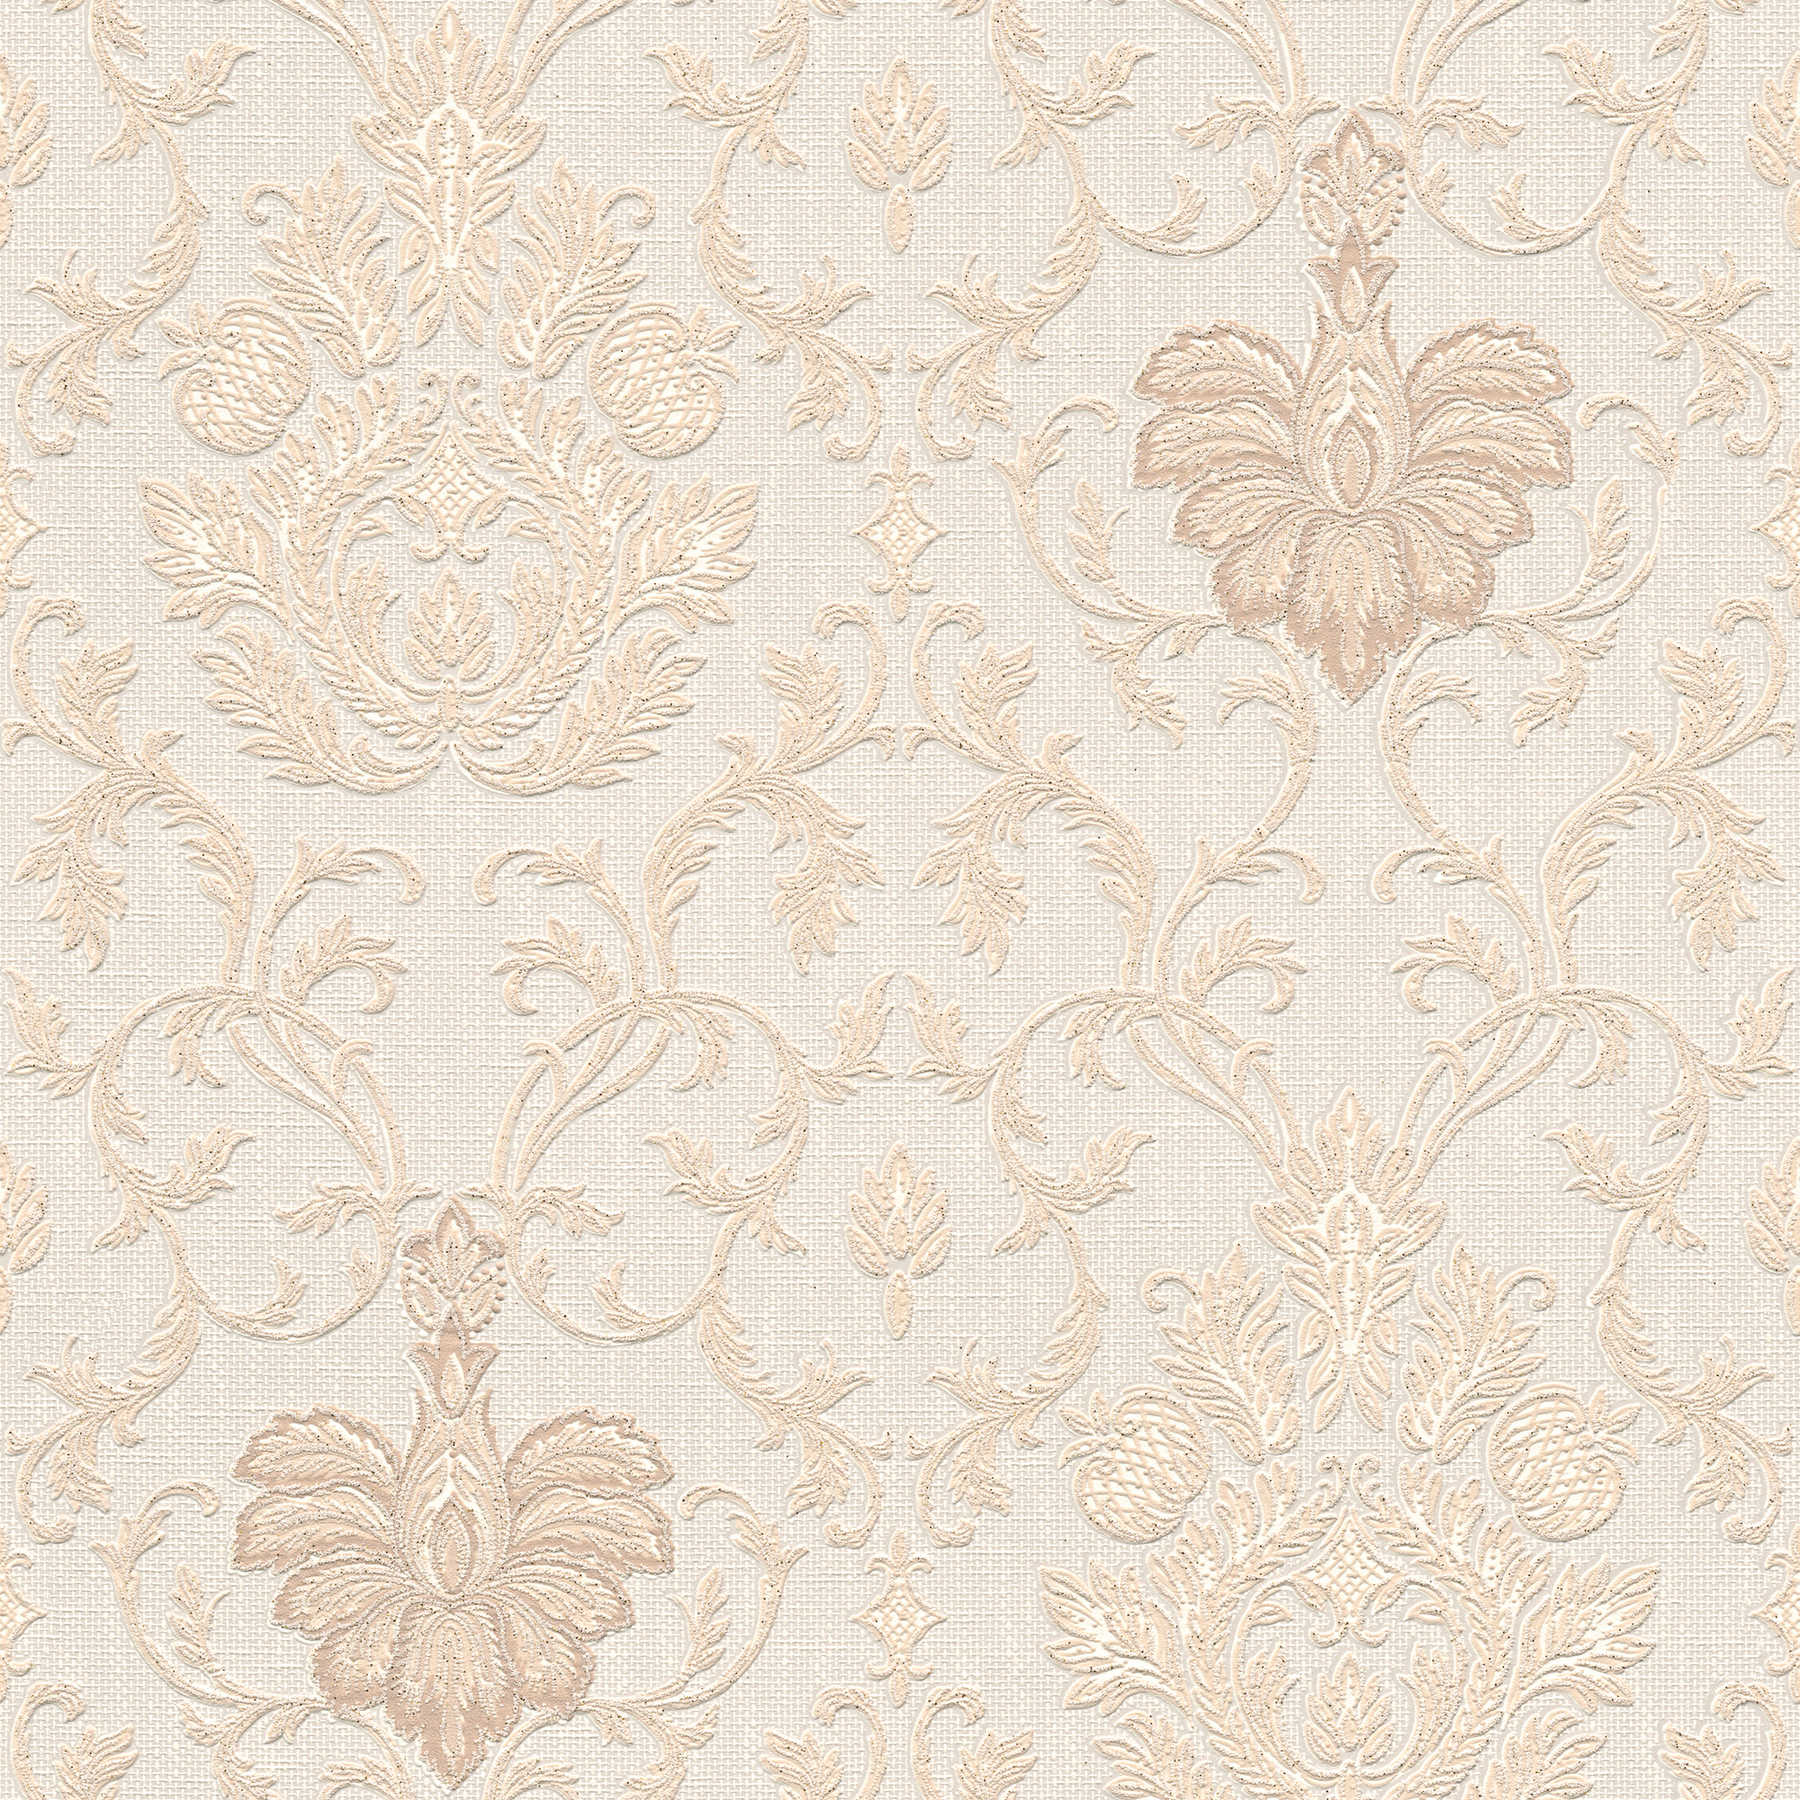 Wallpaper ornamental pattern in colonial style - beige, white
